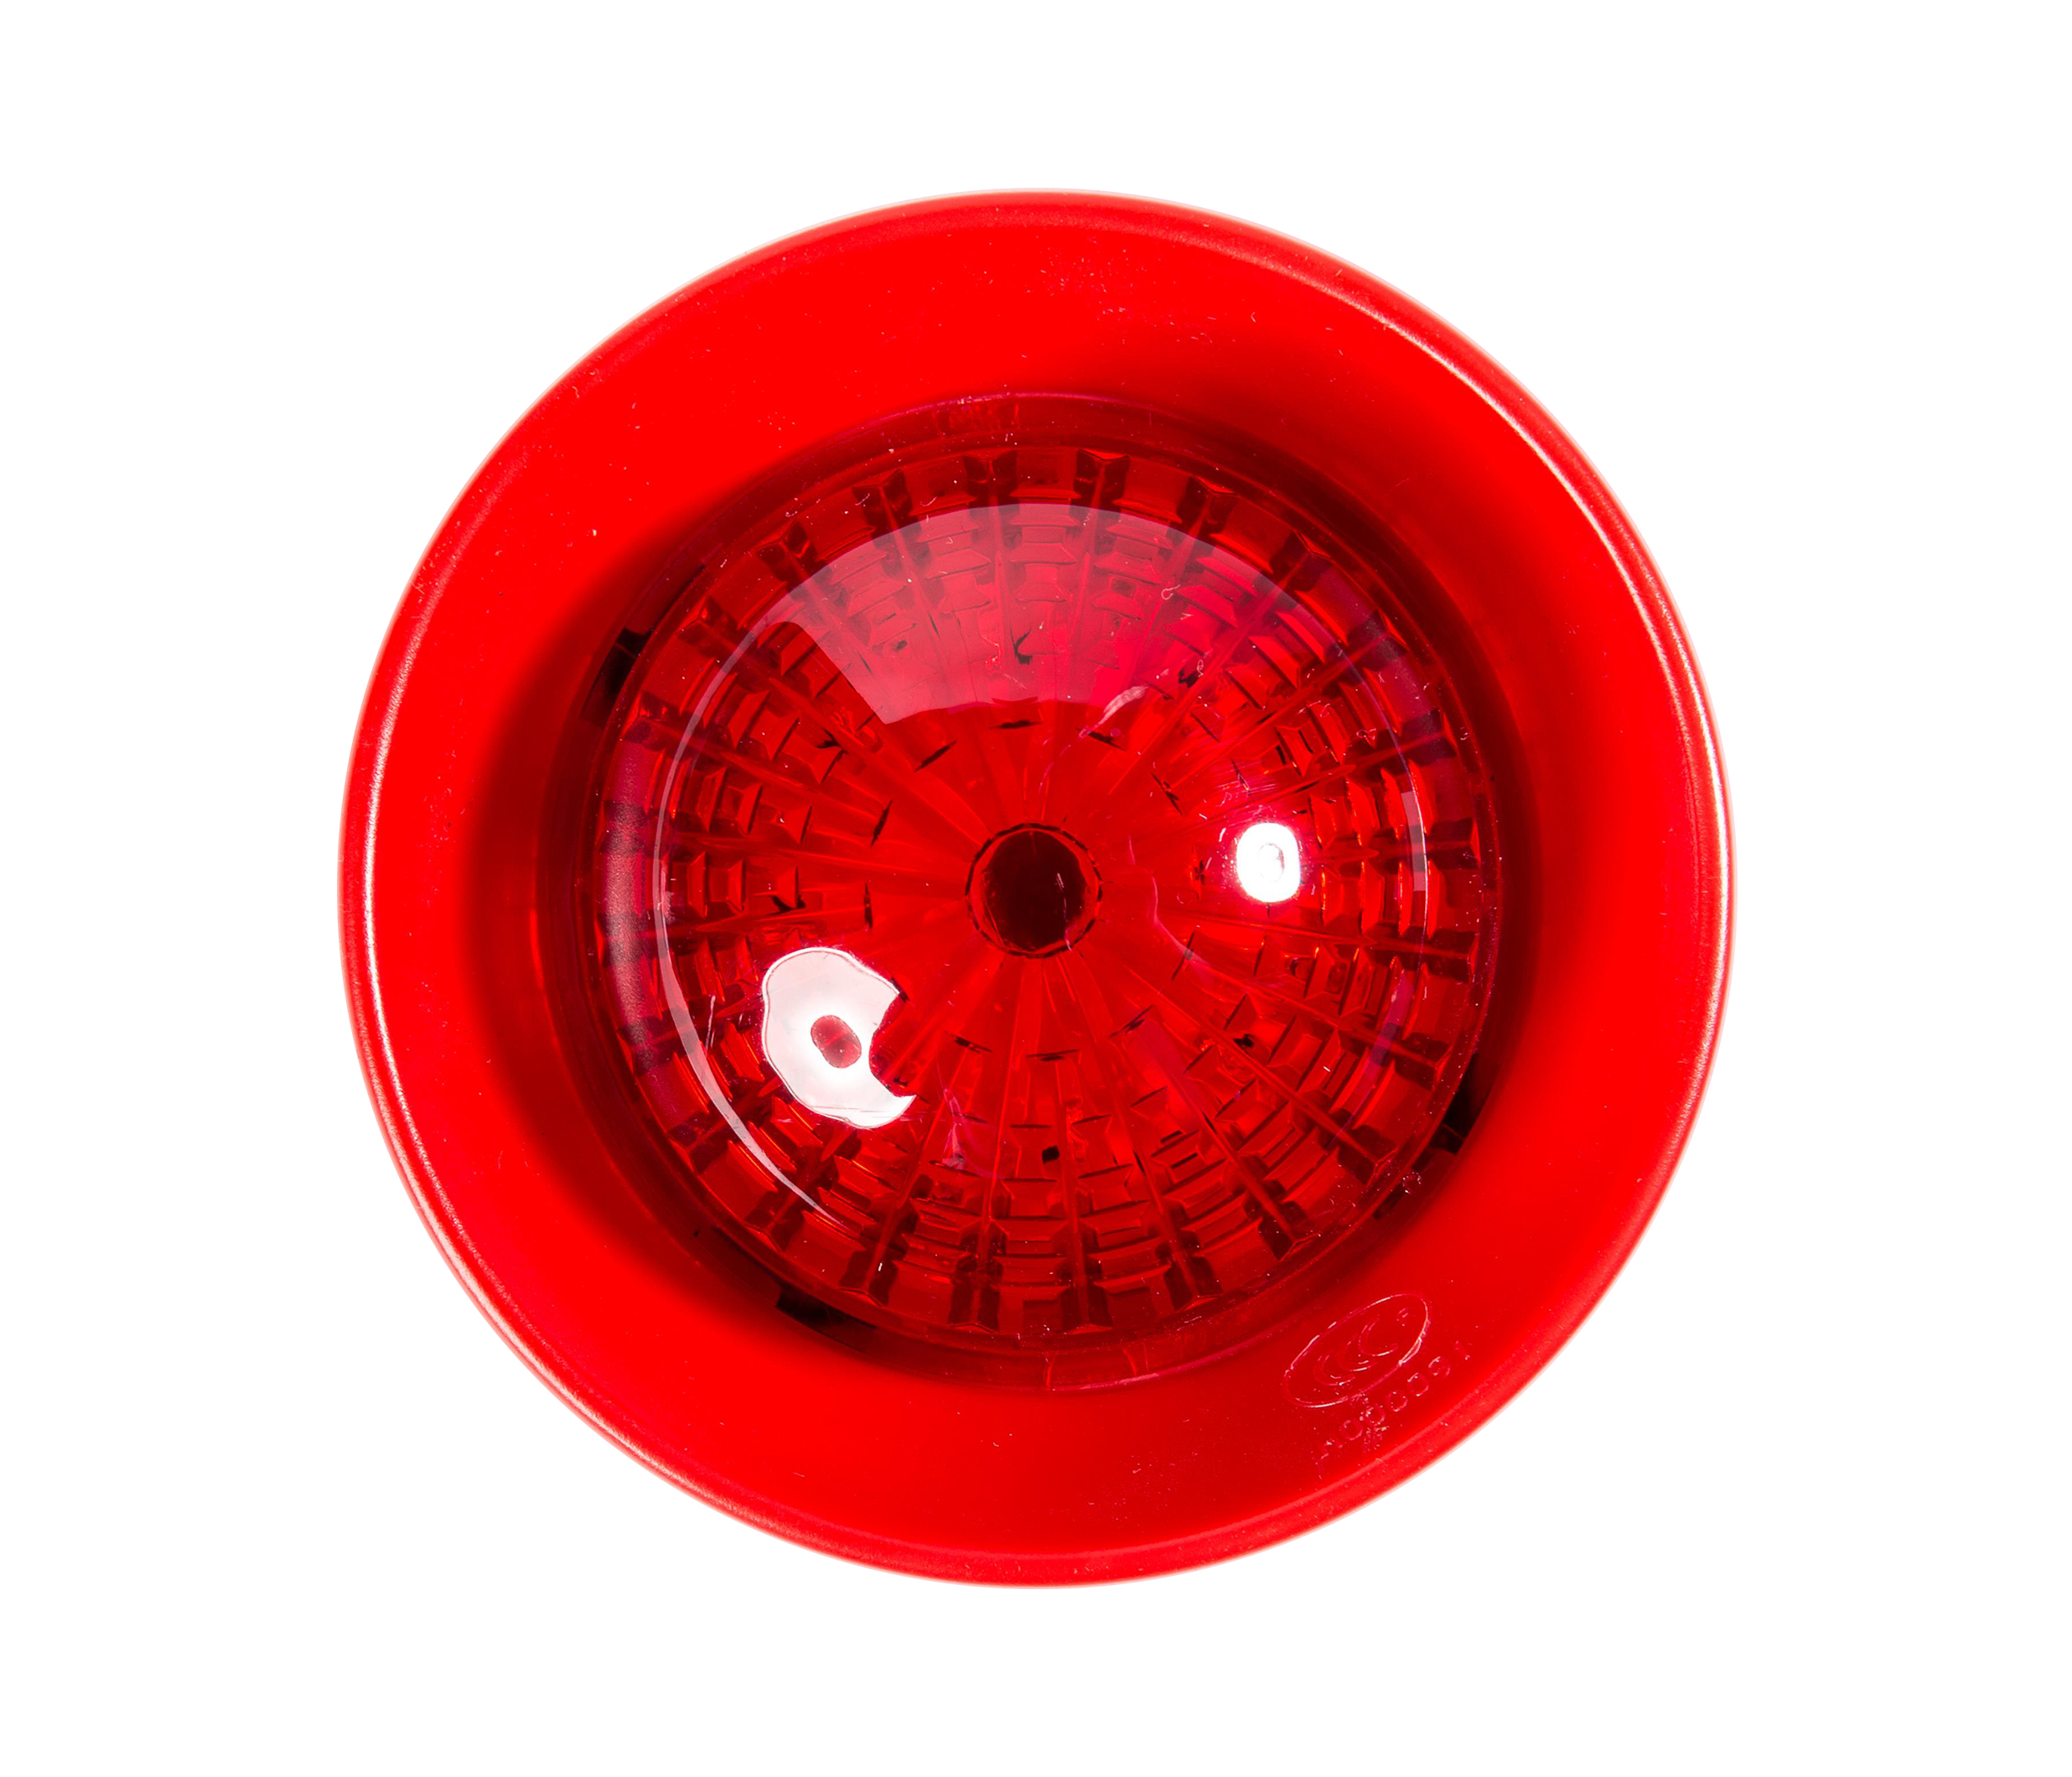 Alarm acousto-optik kebakaran J-EI6085N